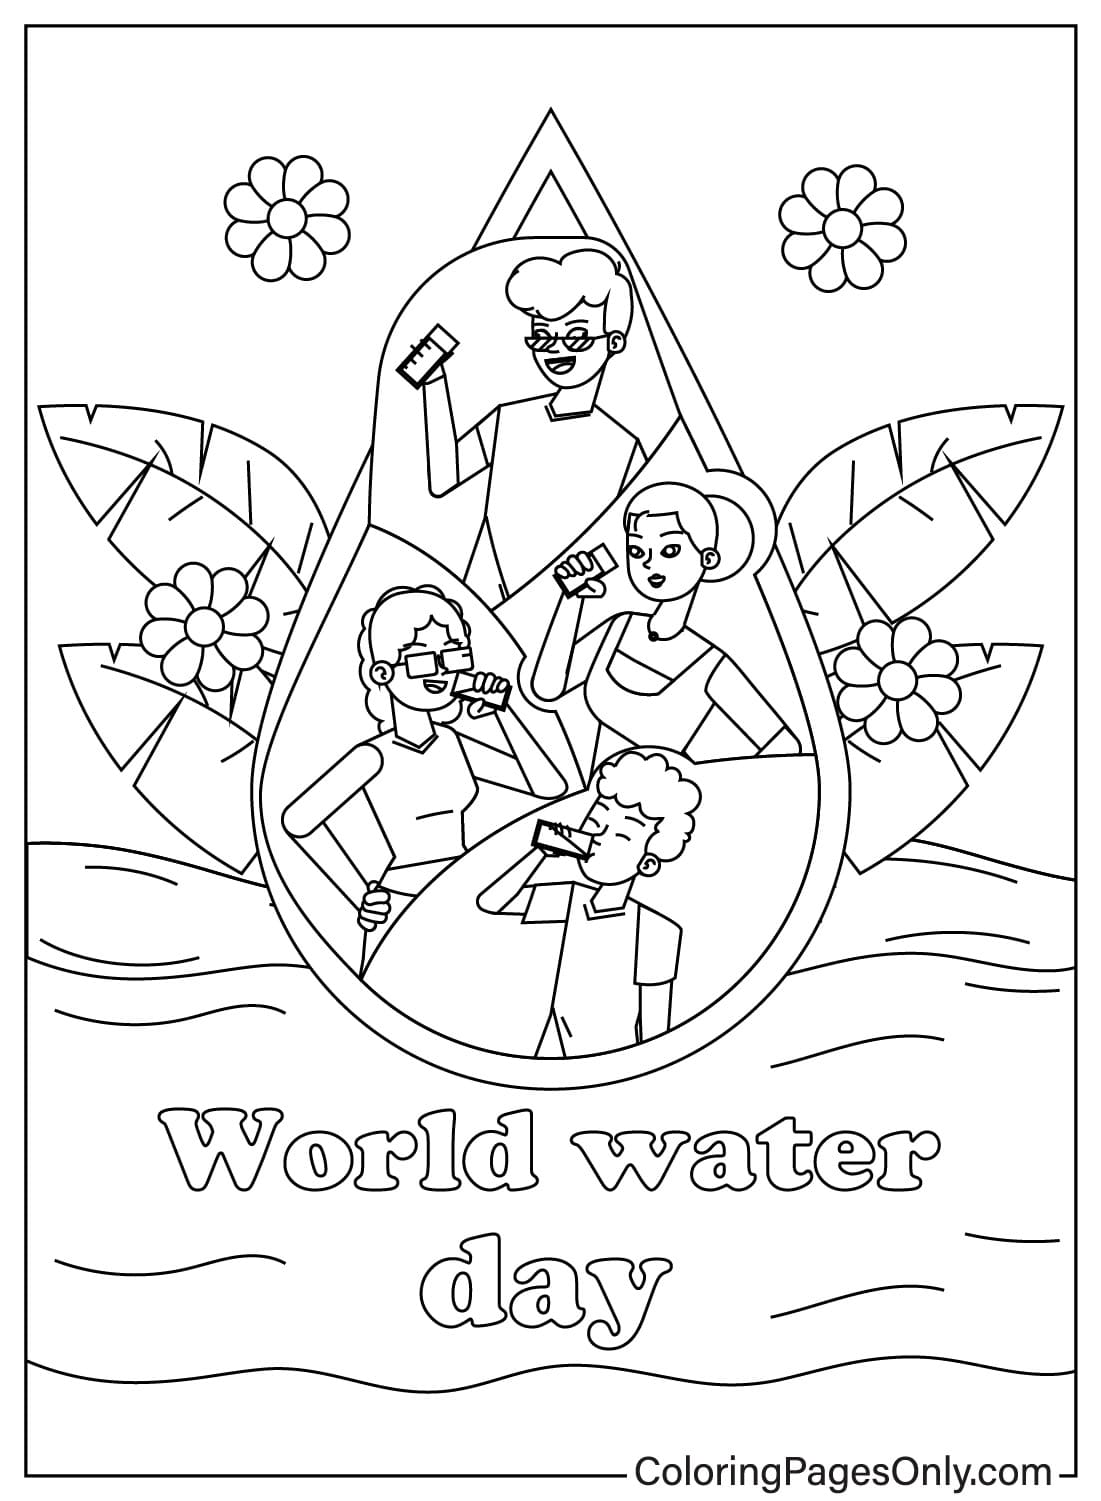 Раскраска для детей, посвящённая Всемирному дню воды